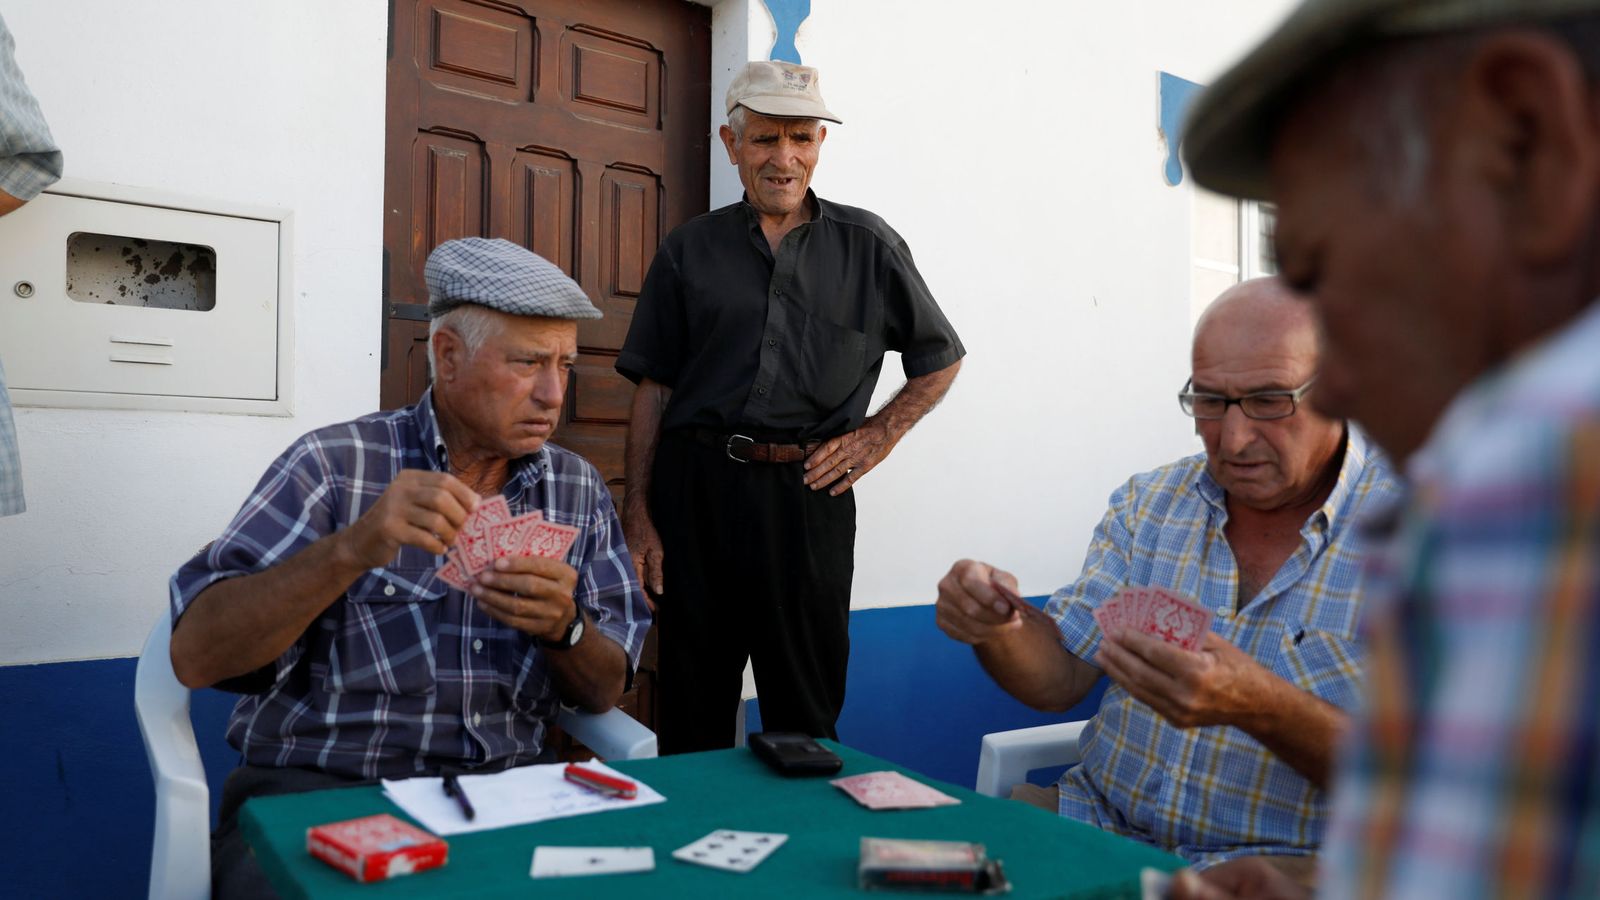 Foto: Portugueses jugando a las cartas en la localidad de Amieira (REUTERS)